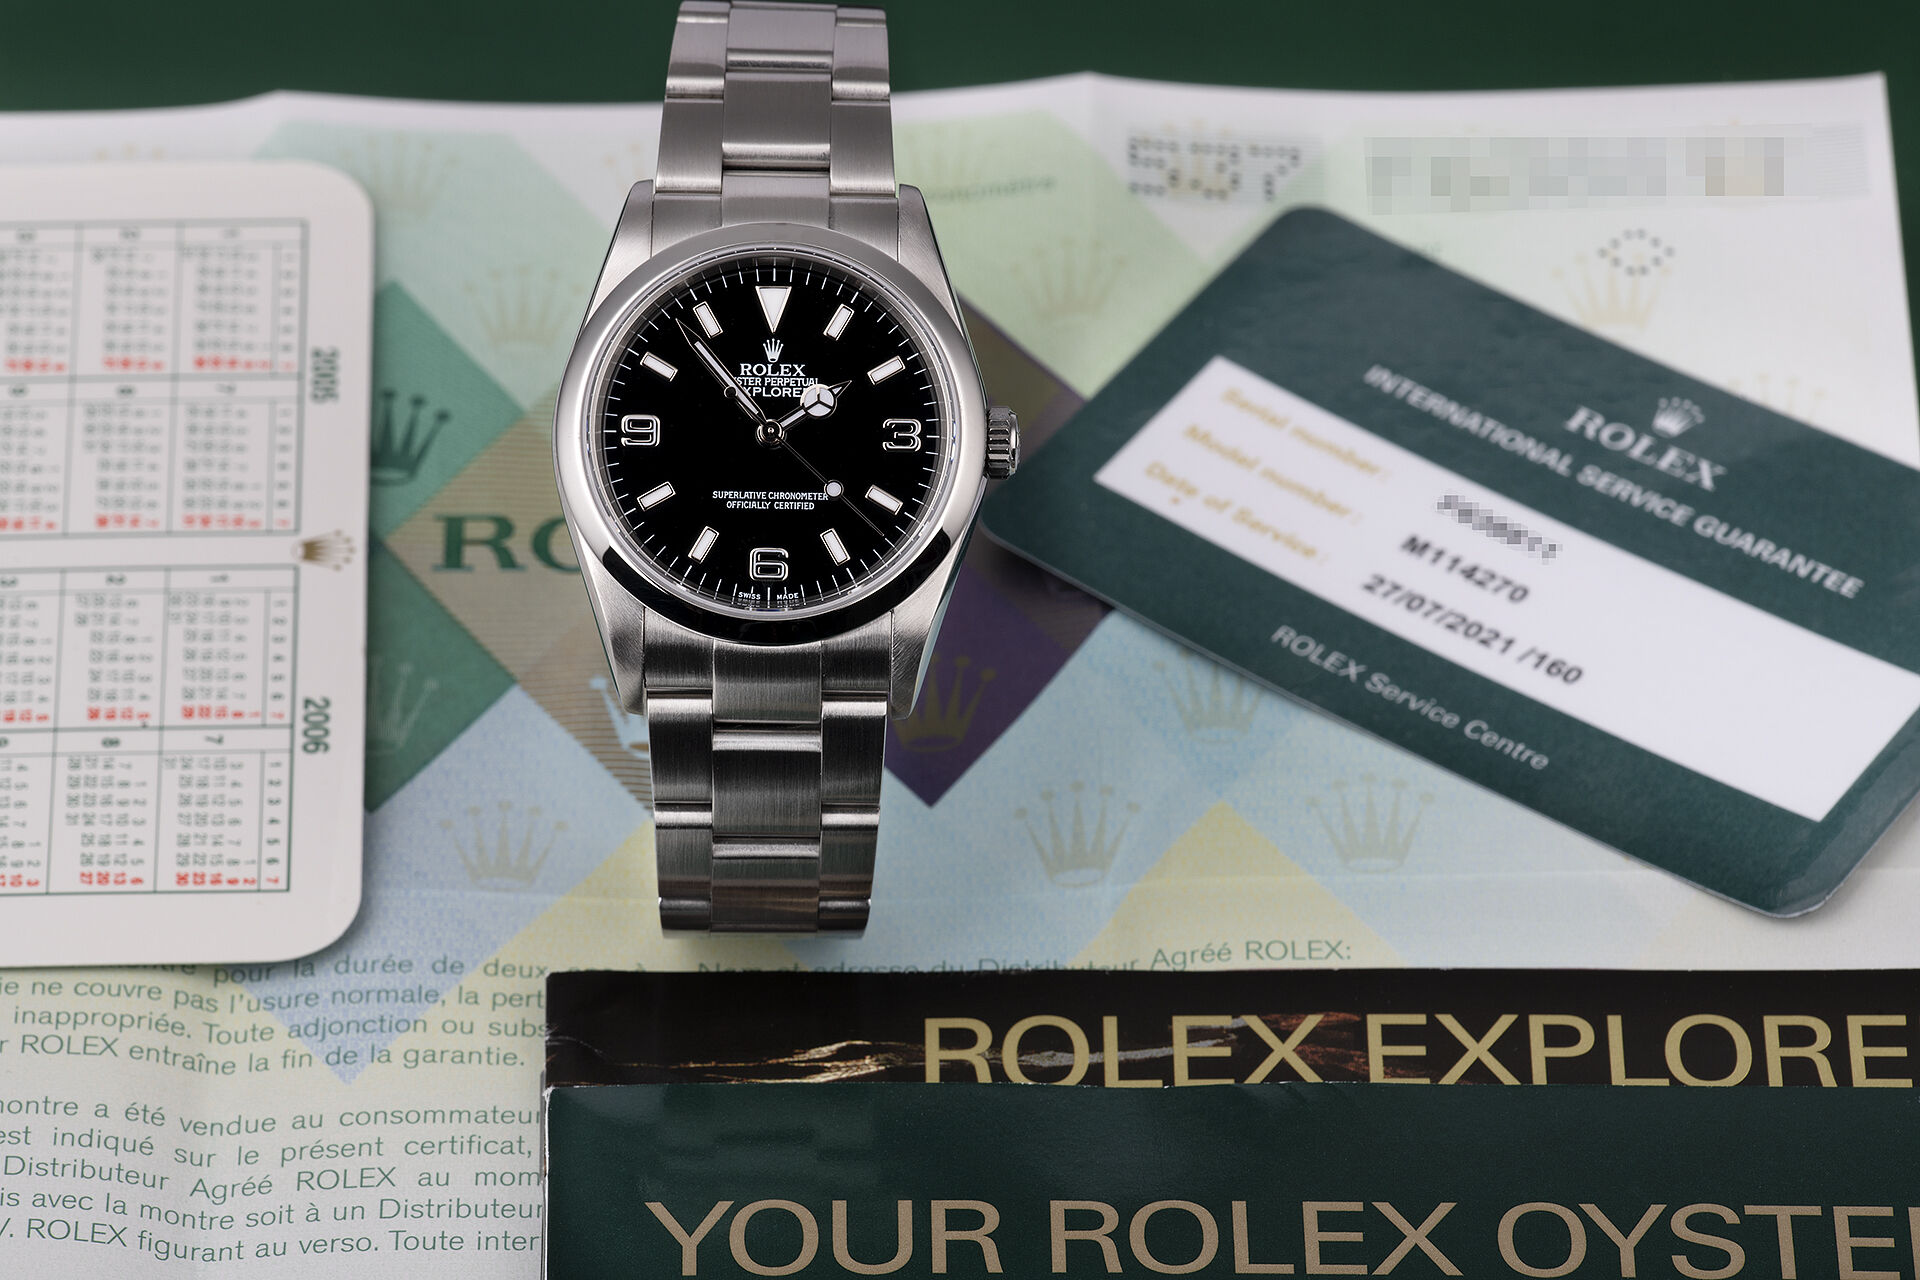 ref 114270 | Under Rolex Service Warranty | Rolex Explorer